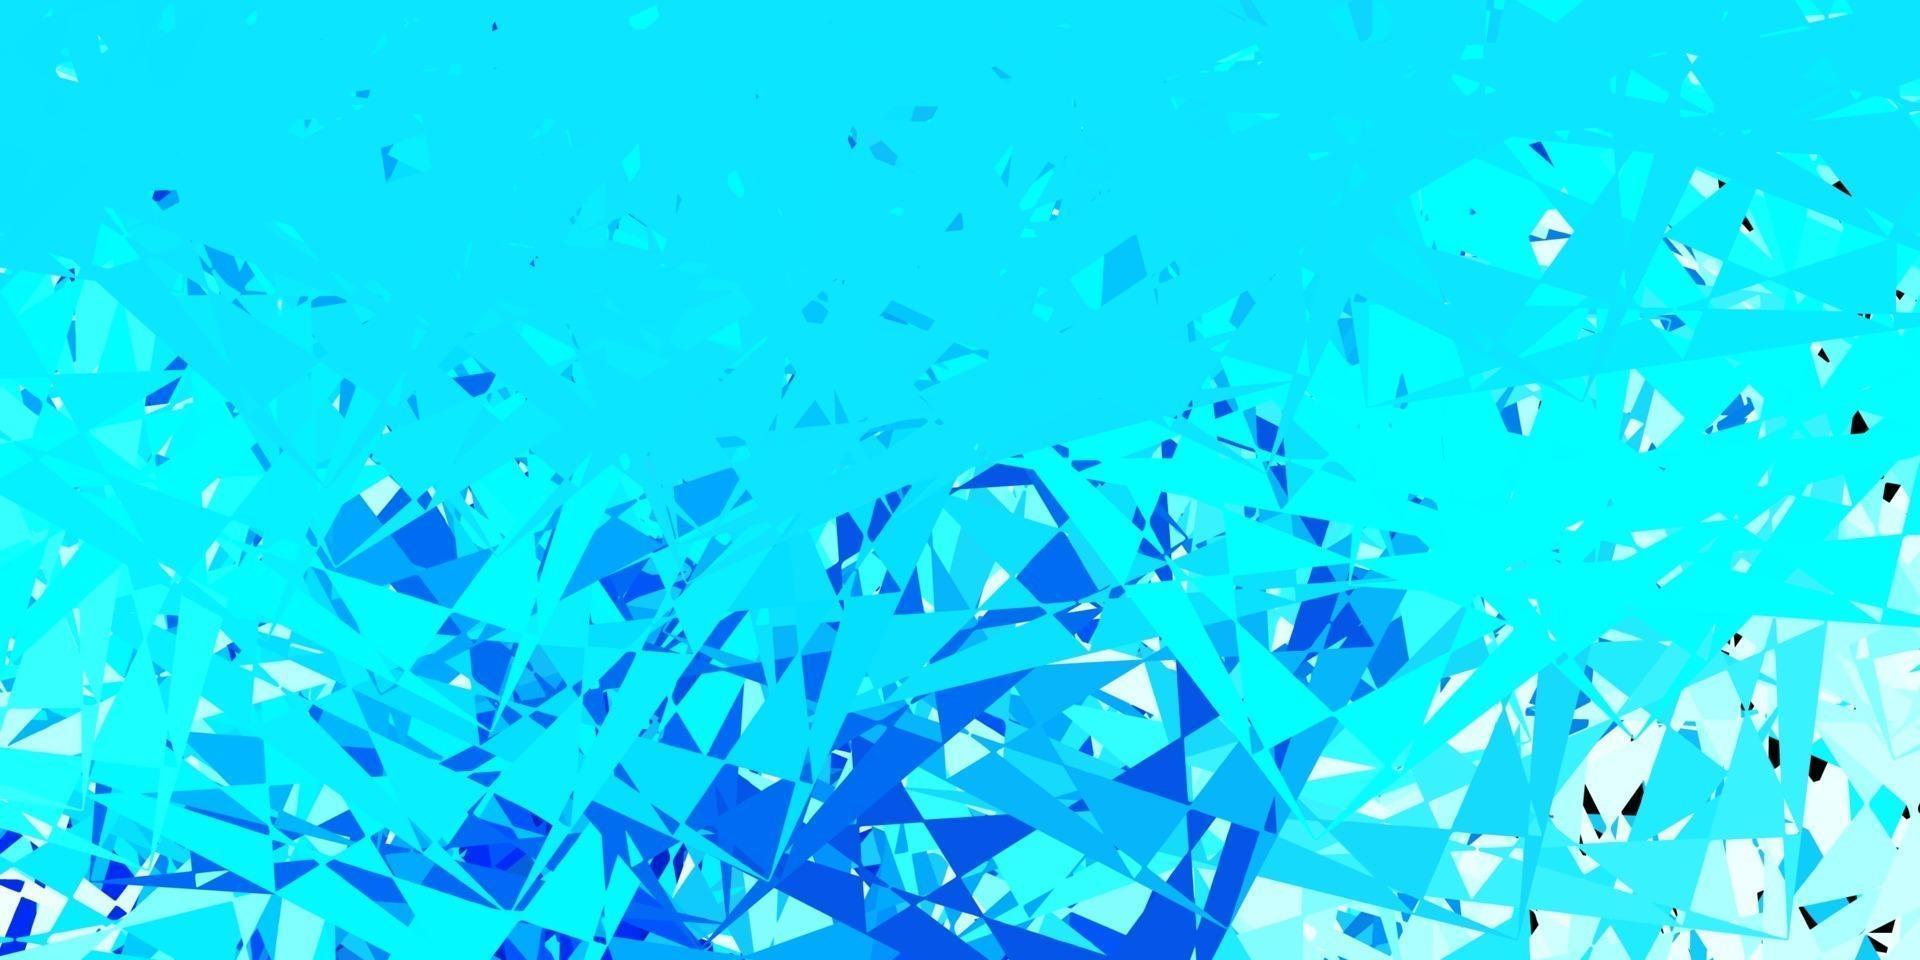 sfondo vettoriale azzurro con triangoli.